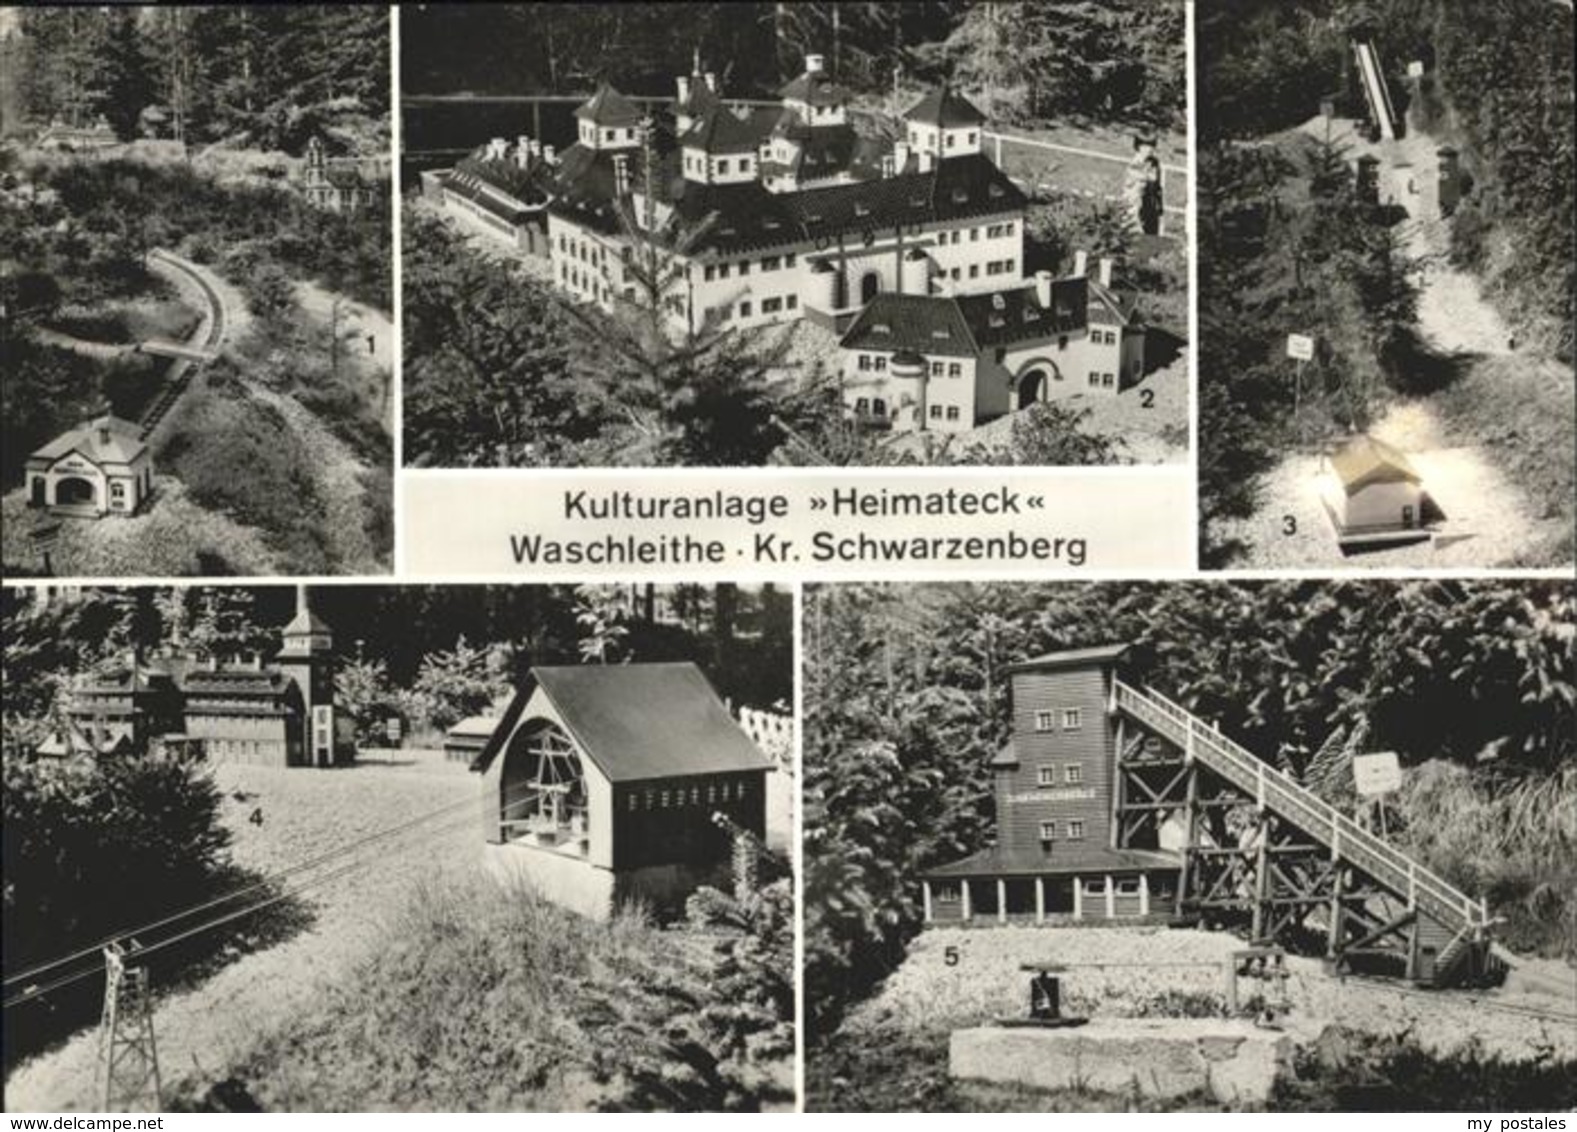 41235398 Waschleithe Kulturanlage Heimateck, Kr. Schwarzenberg Waschleithe - Grünhain